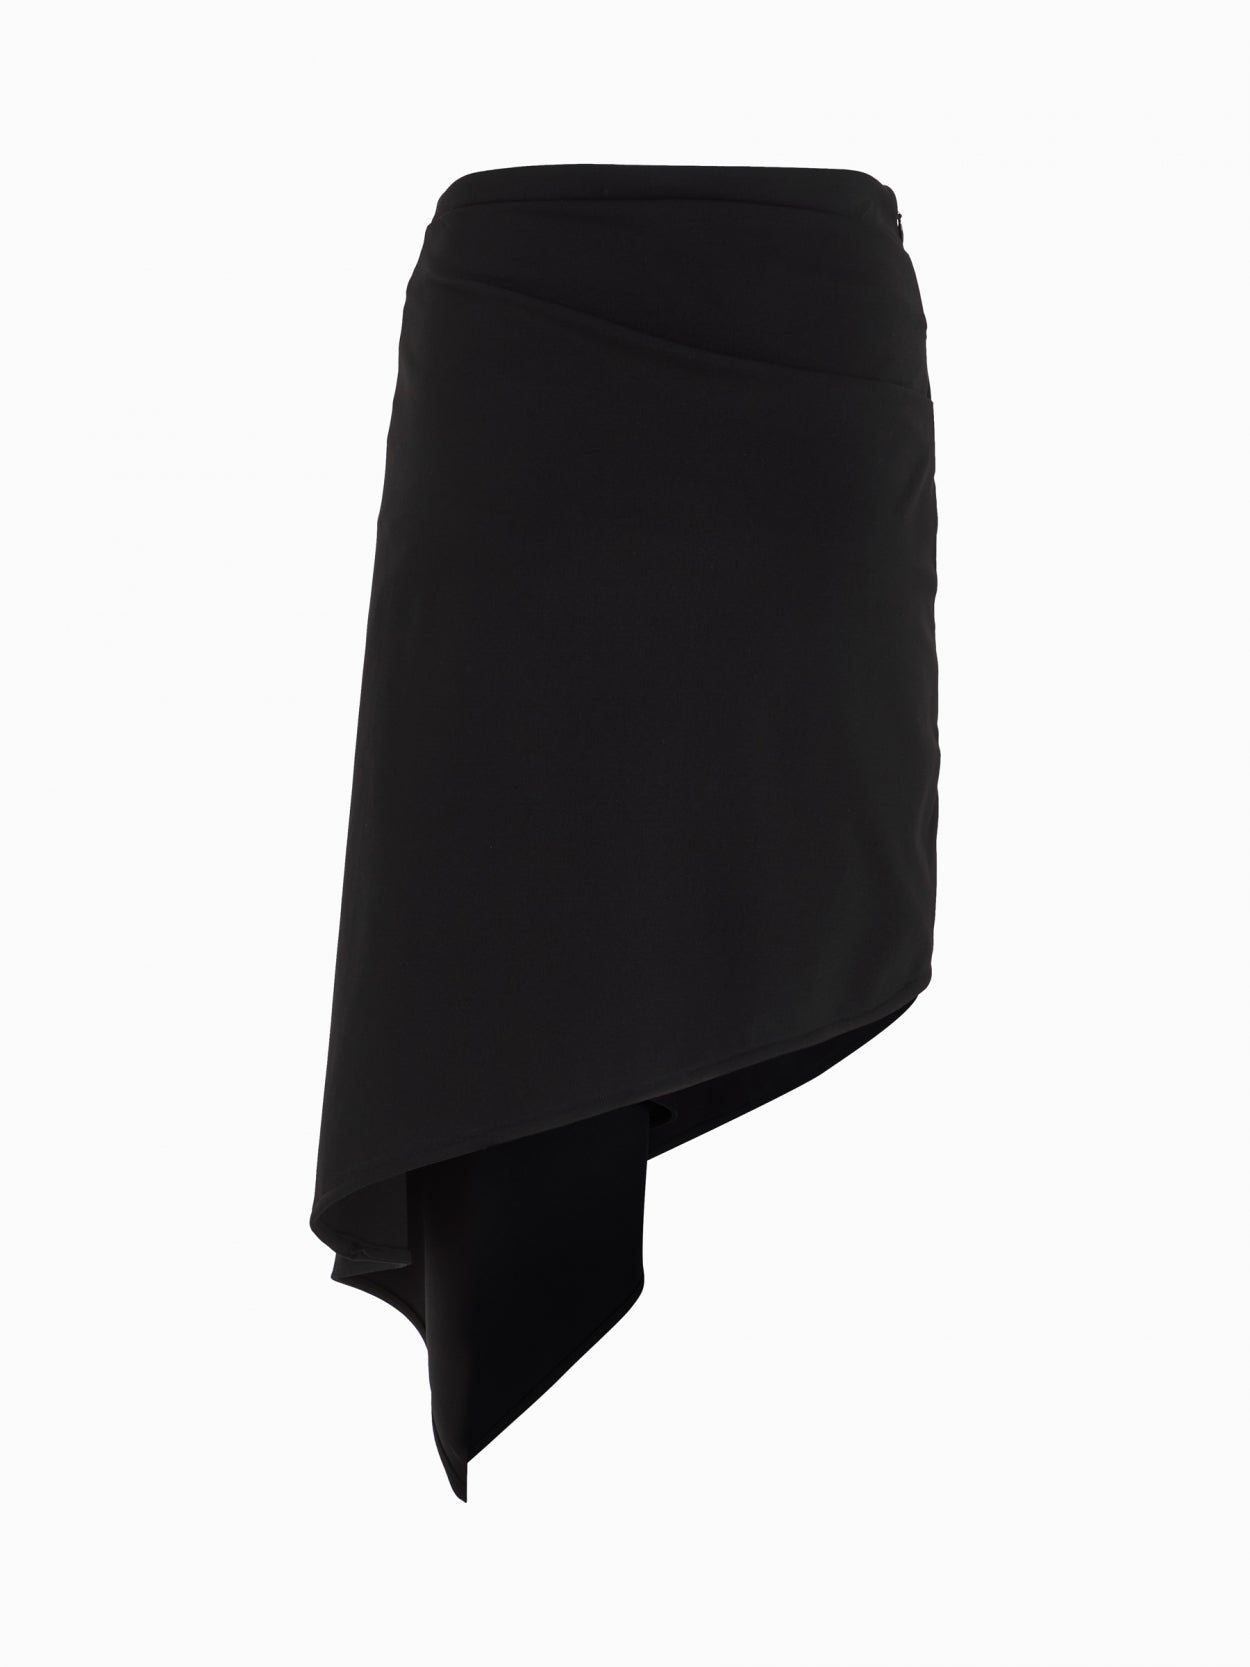 back packshot of a black draped skirt